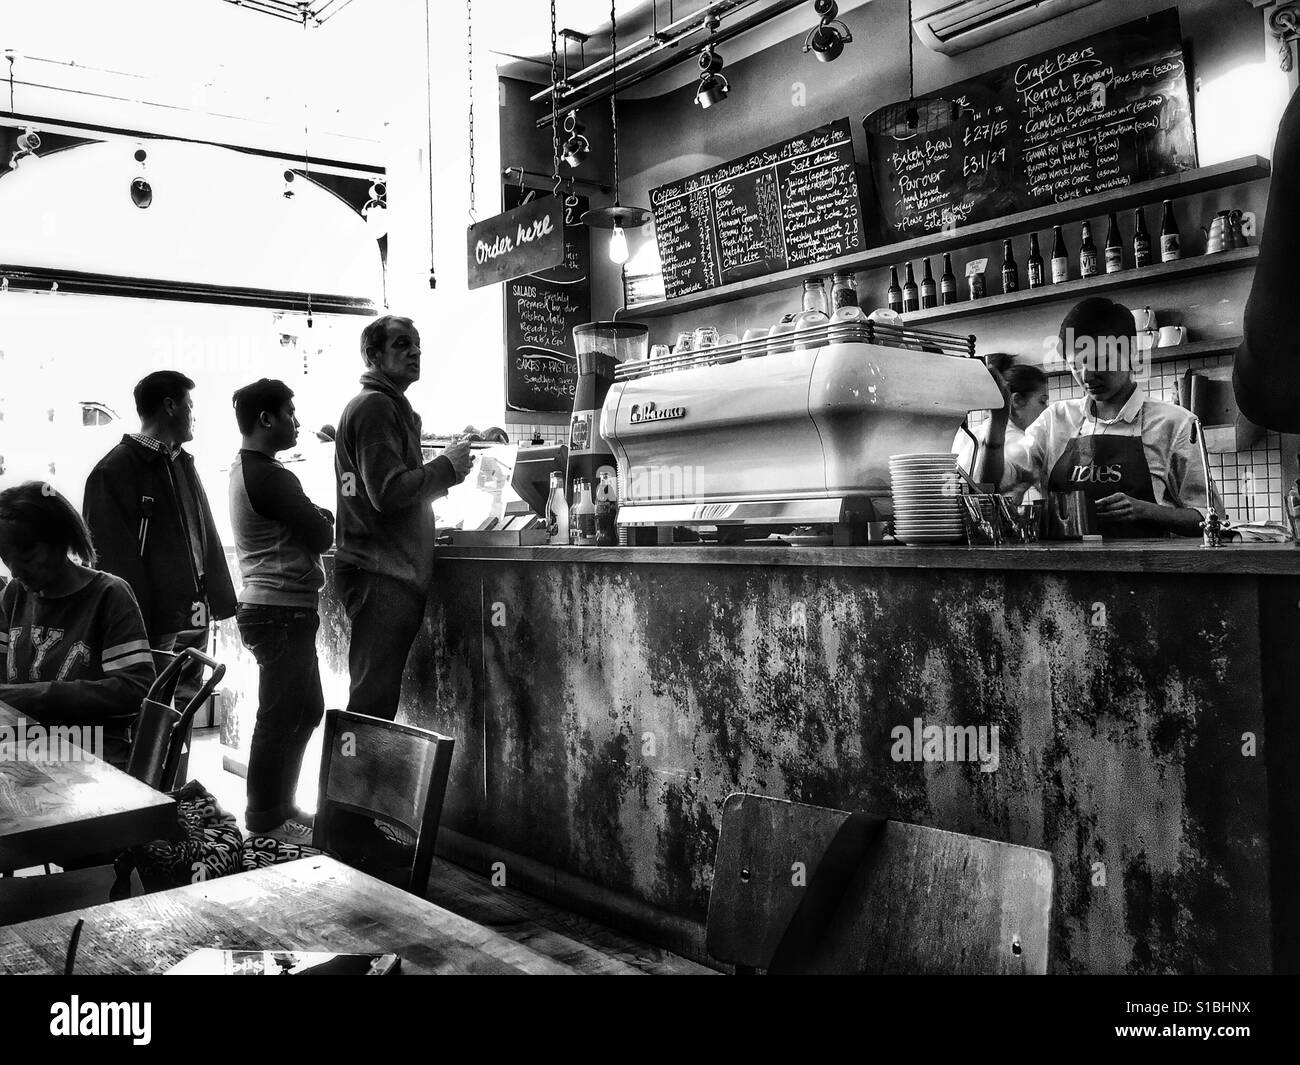 Schwarz / weiß Foto des Kunden Warteschlangen für den Kaffee von der Espresso-Maschine als die Barista macht ihre Getränke auf Notizen Kaffee, London, England, UK. Stockfoto